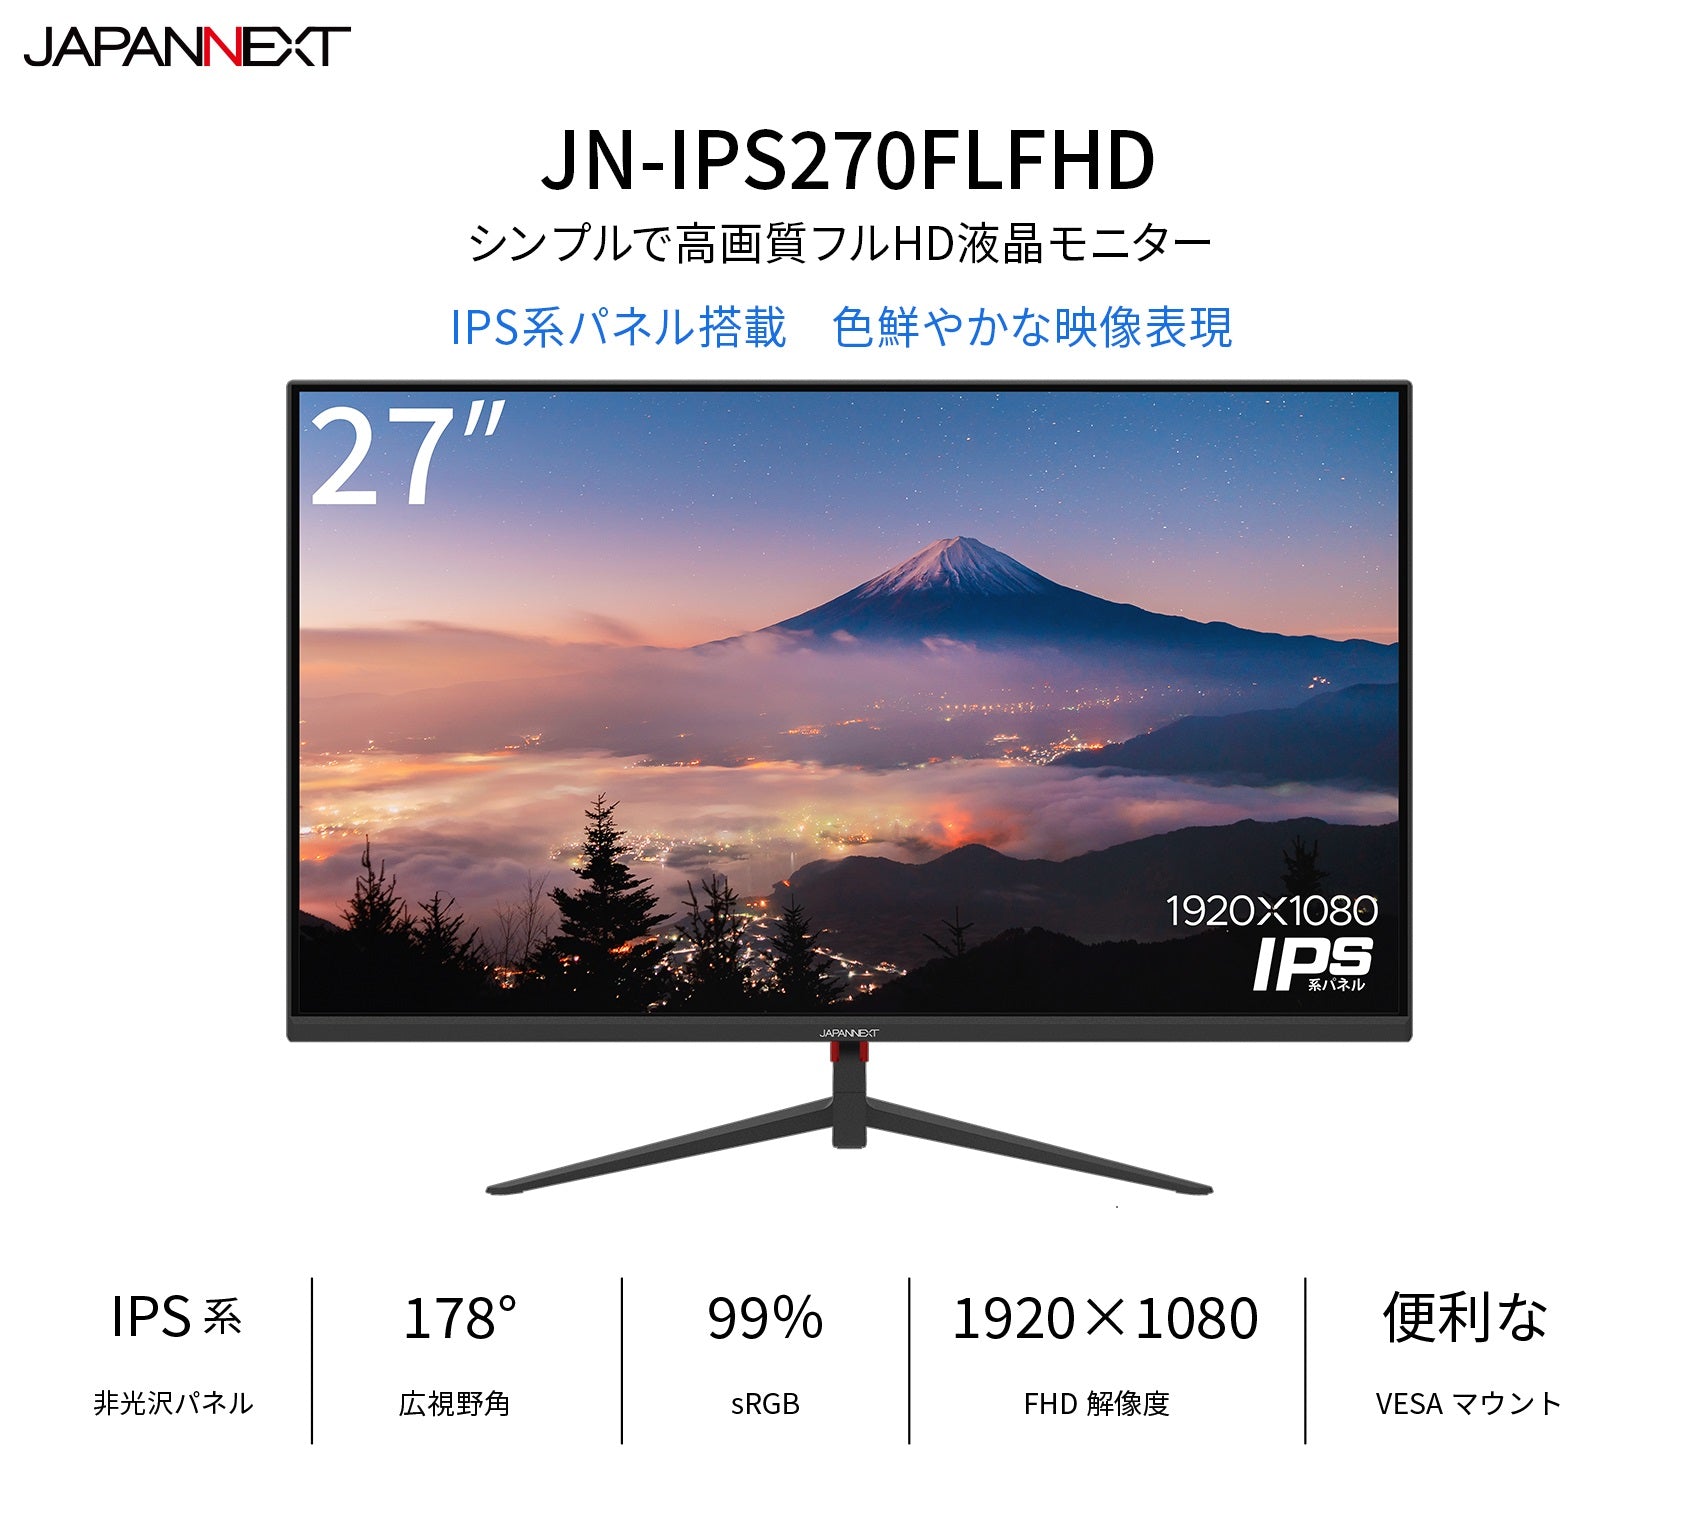 japannext  JN-IPS270FLFHD 27型モニター